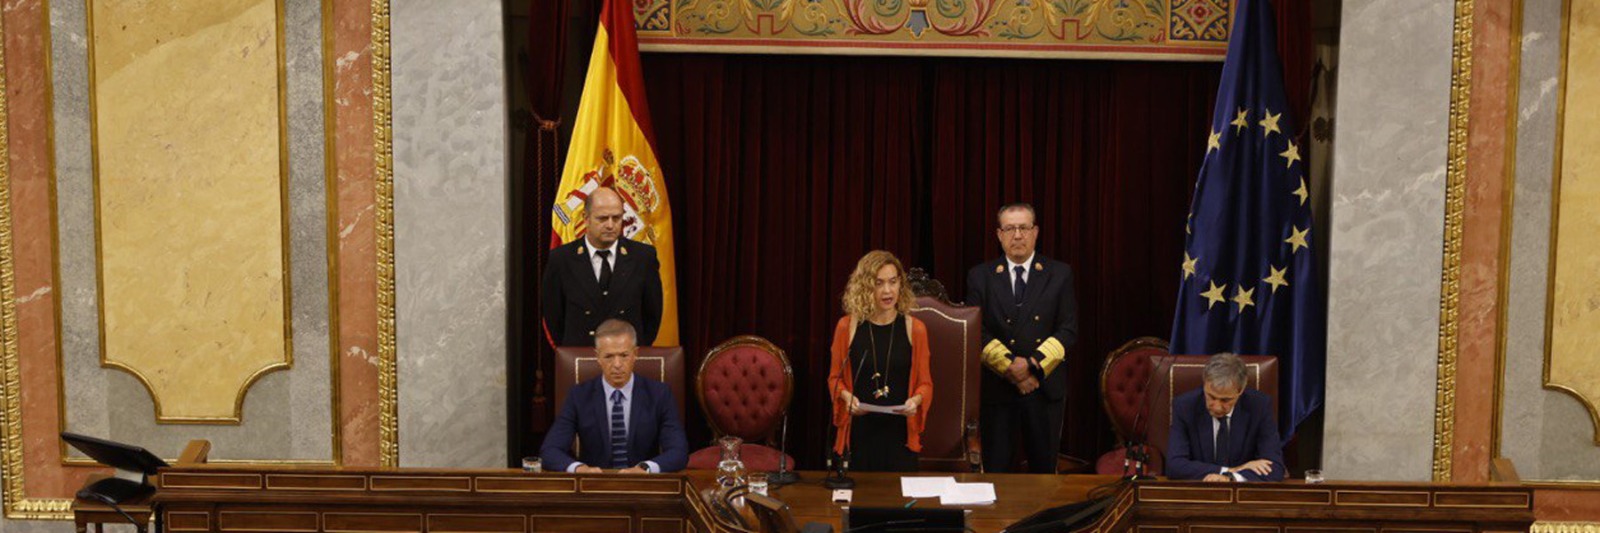 La retransmisión del acto puede verse en la página web del Congreso. También está disponible subtitulado e interpretado en lengua de signos española.